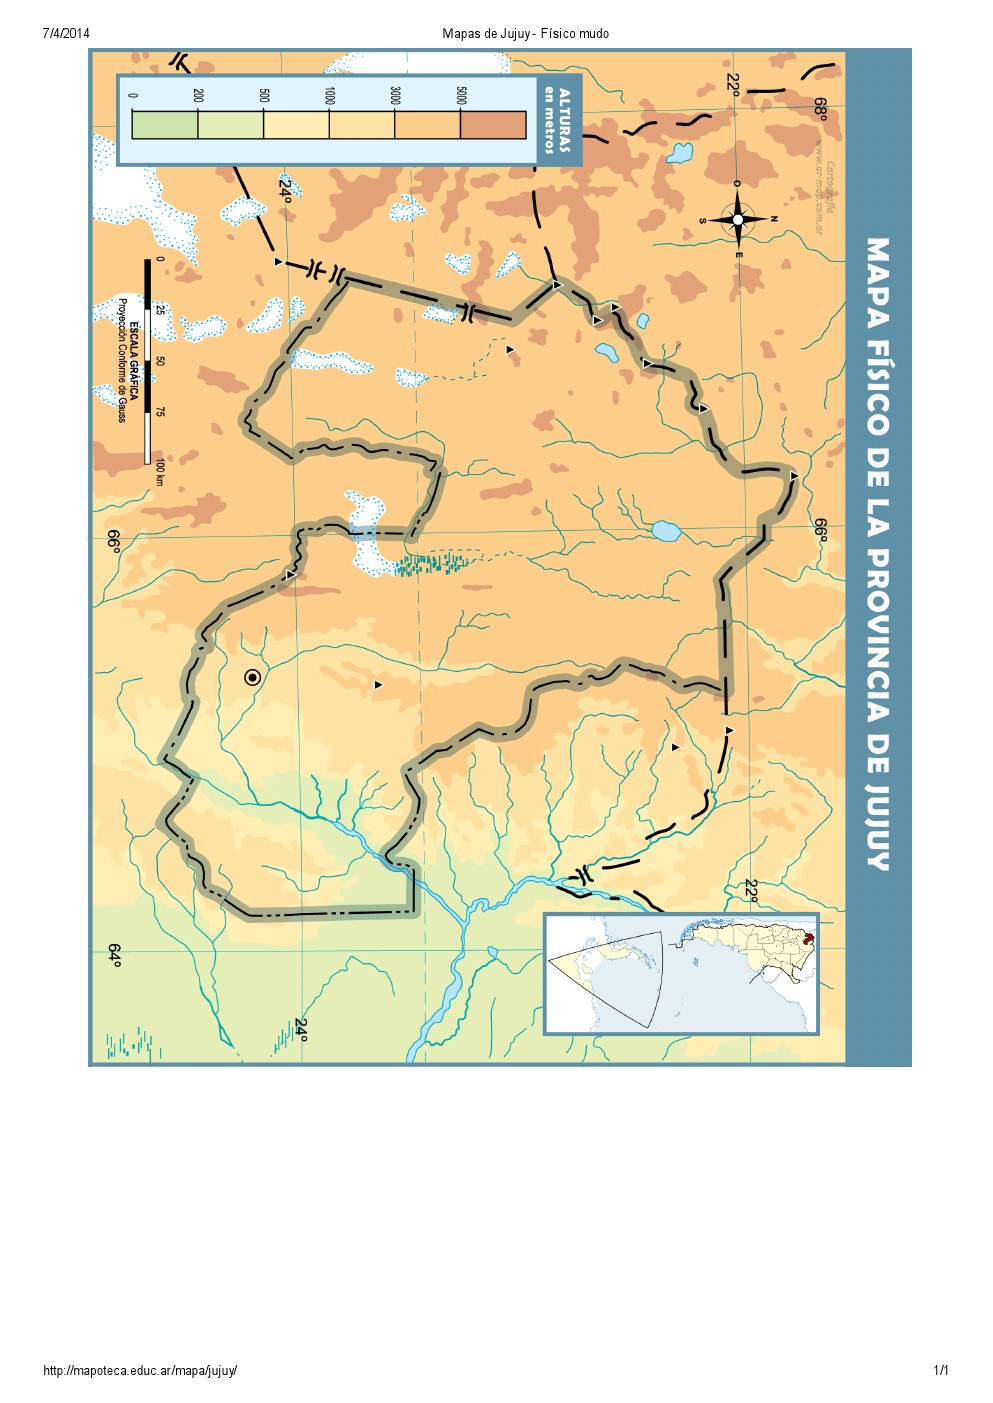 Mapa mudo de ríos de Jujuy. Mapoteca de Educ.ar